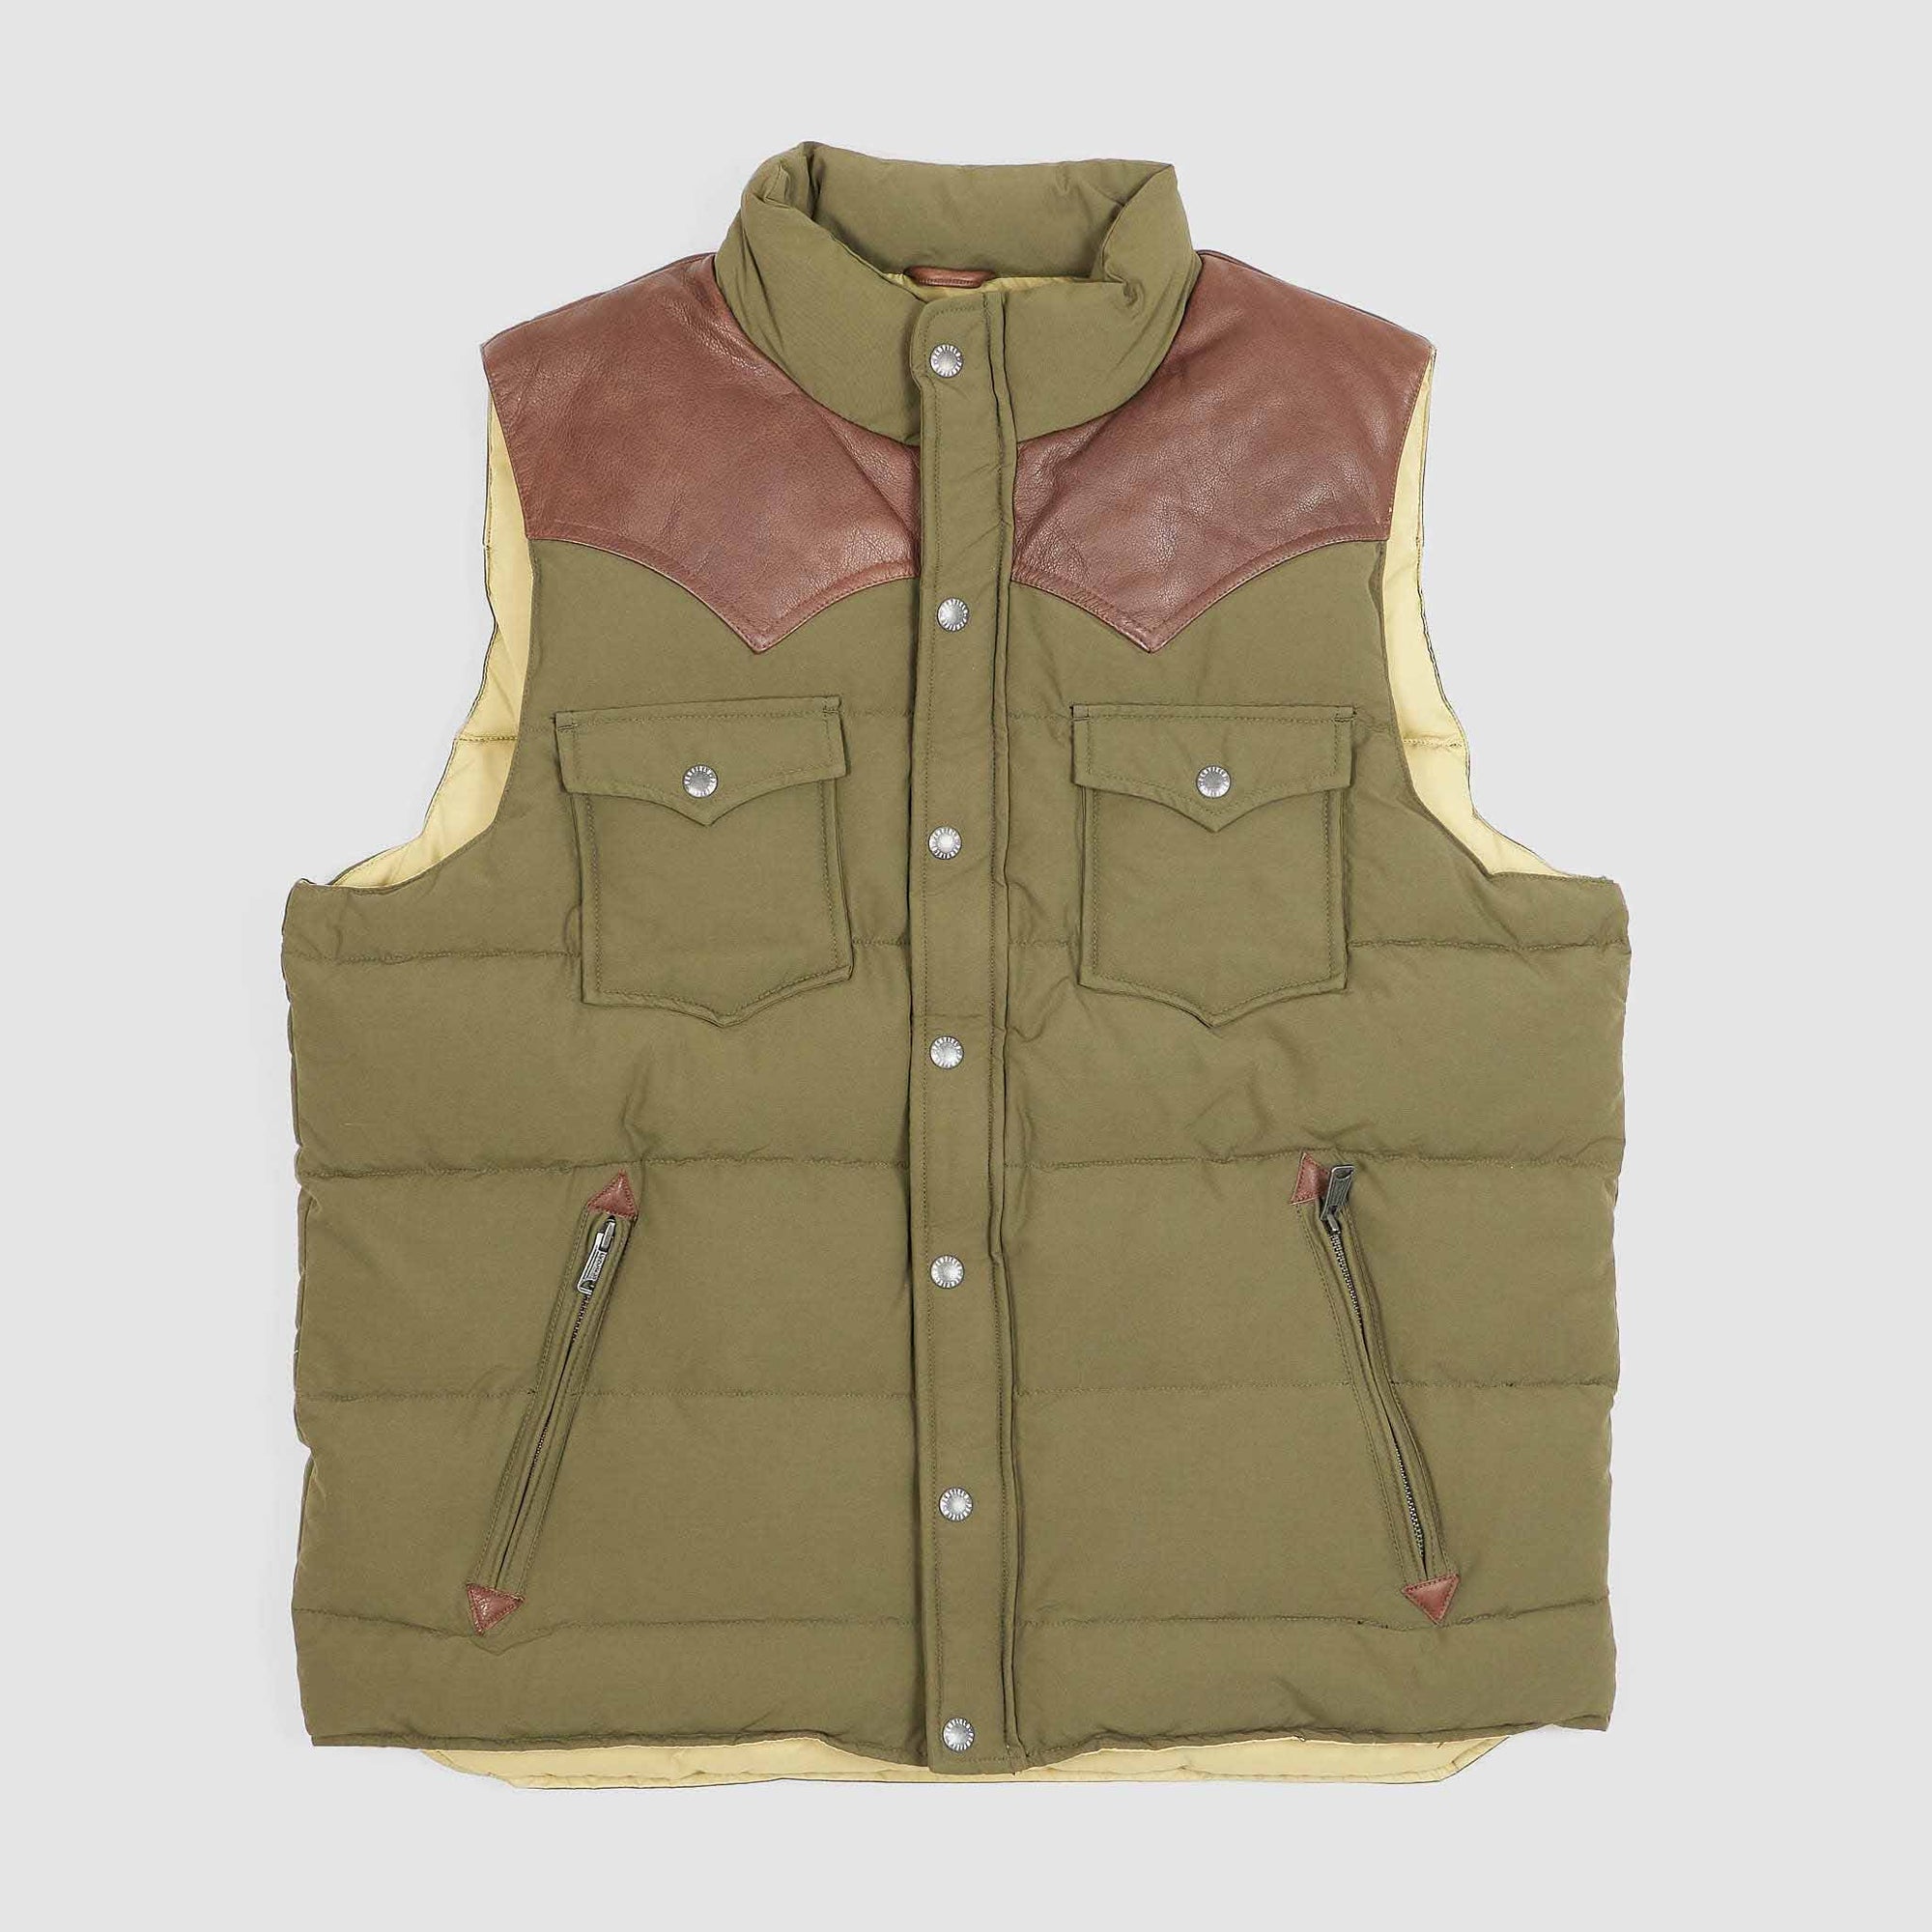 Tenjin Works Craftman Leather Vest - DeeCee style